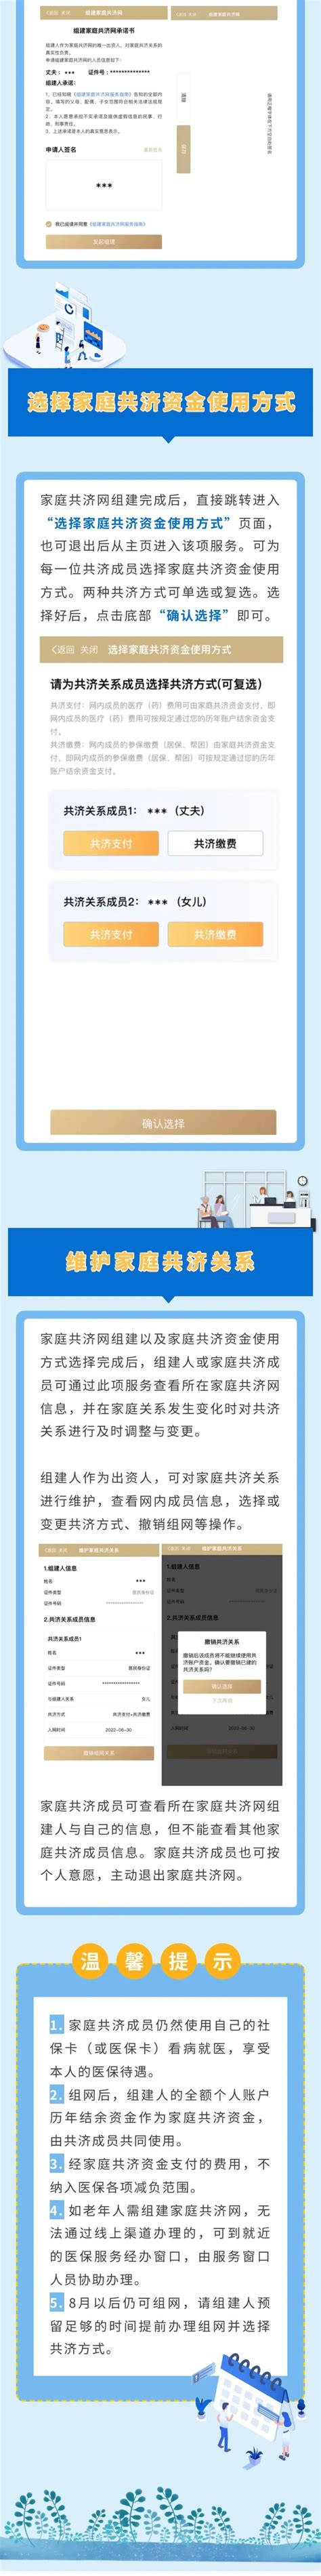 上海国际医学中心宣布纳入医保：患者拿医保卡就能享受便捷高效医疗服务